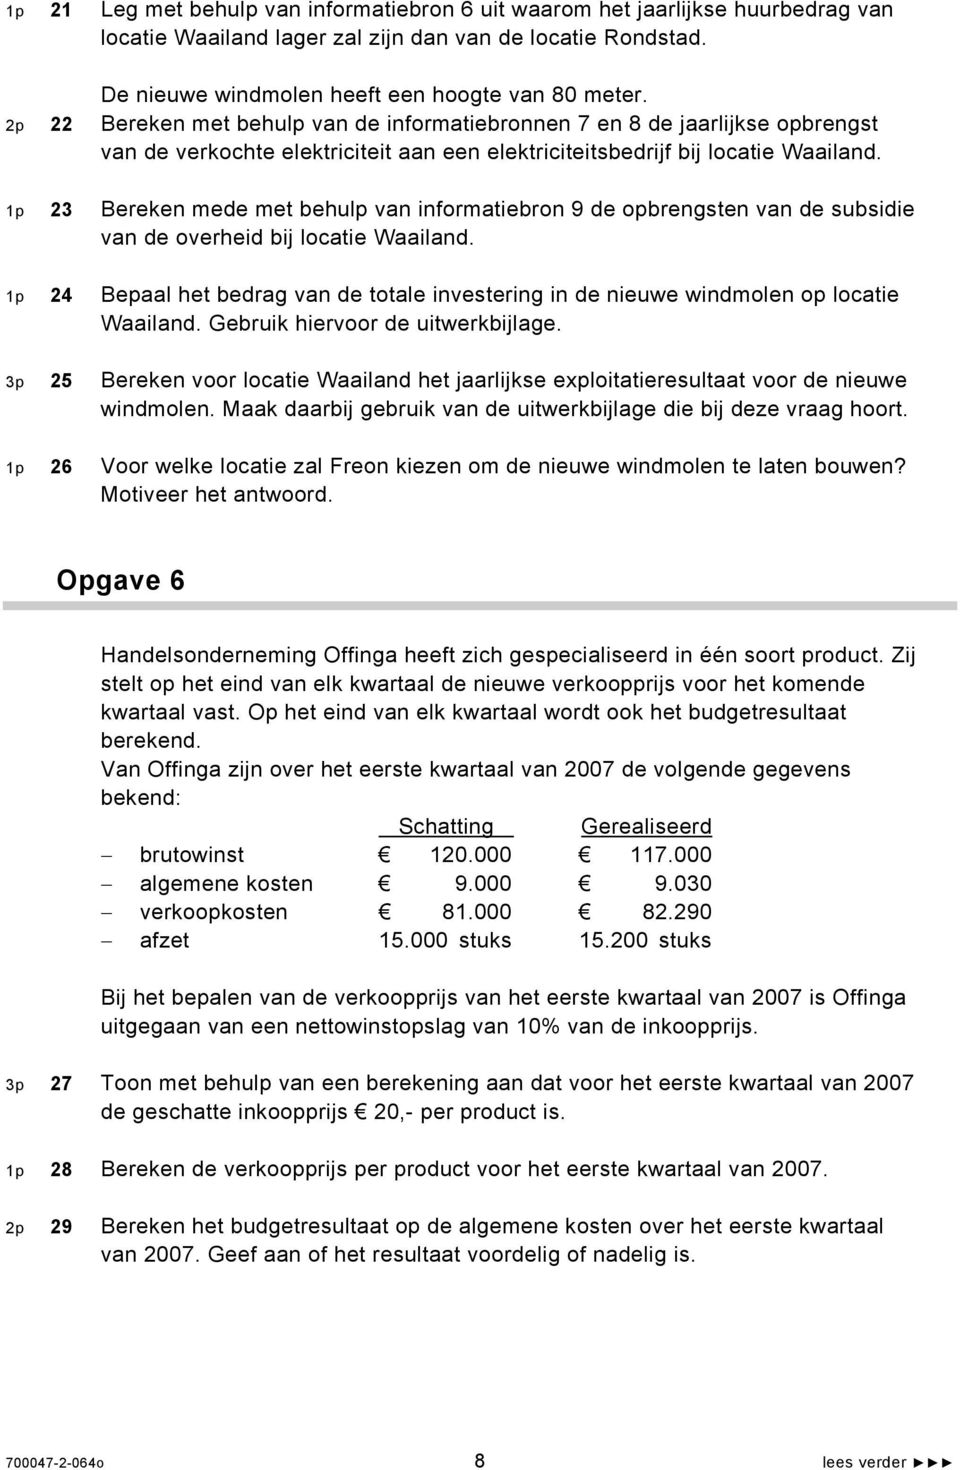 1p 23 Bereken mede met behulp van informatiebron 9 de opbrengsten van de subsidie van de overheid bij locatie Waailand.